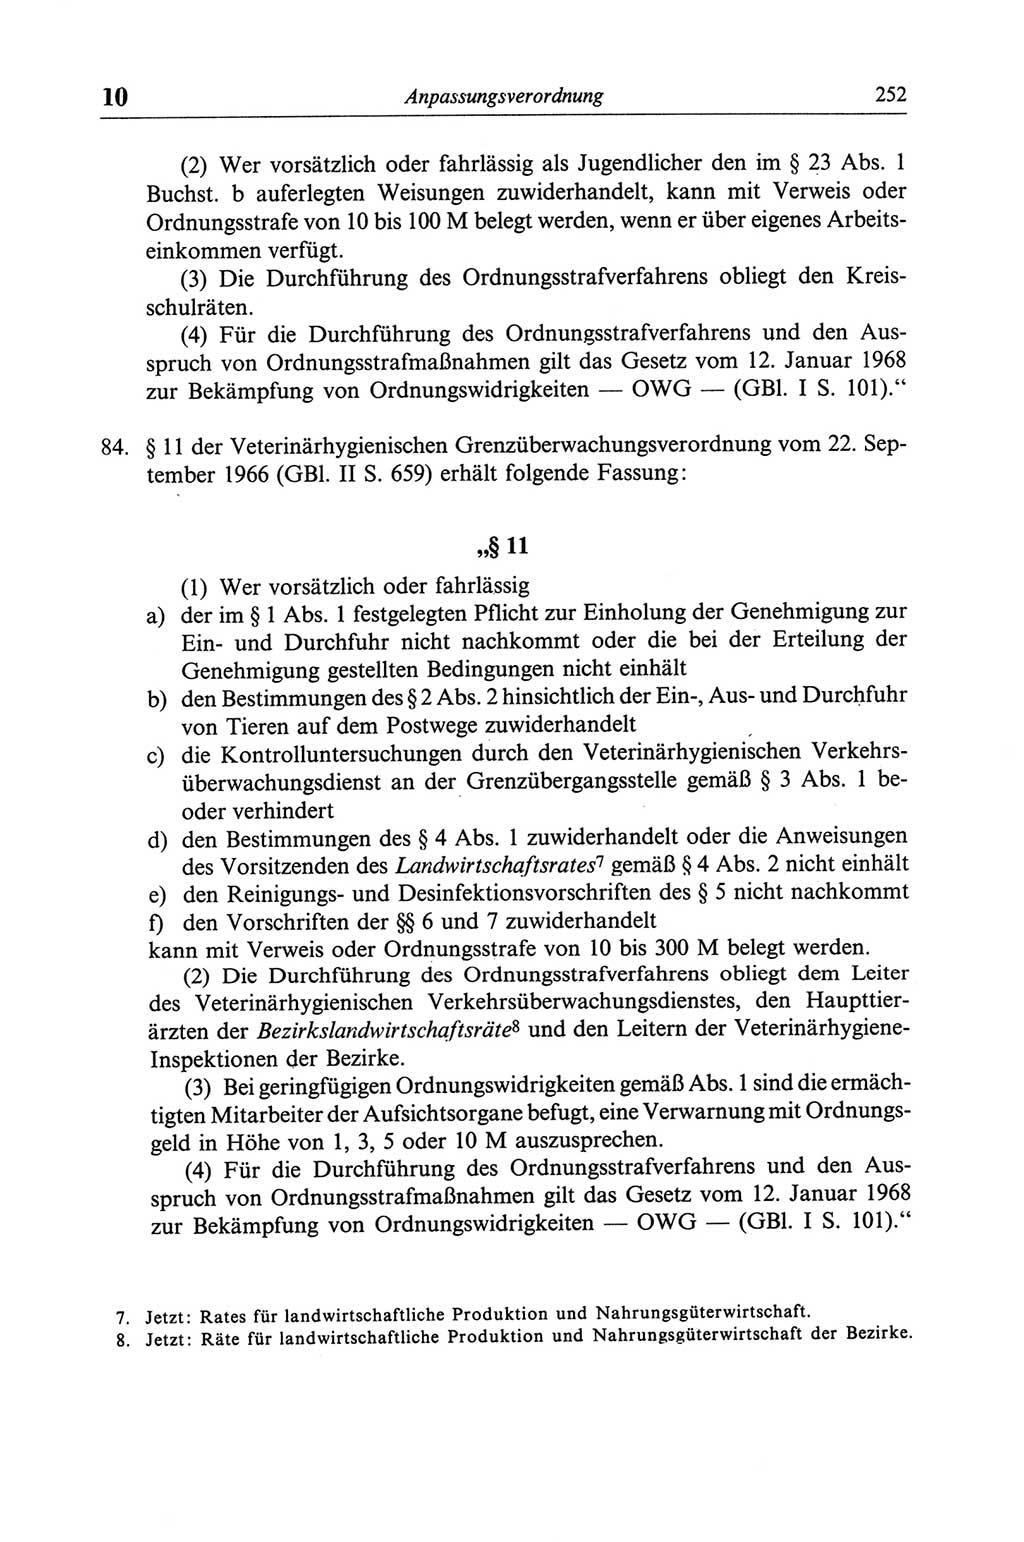 Strafgesetzbuch (StGB) der Deutschen Demokratischen Republik (DDR) und angrenzende Gesetze und Bestimmungen 1968, Seite 252 (StGB Ges. Best. DDR 1968, S. 252)